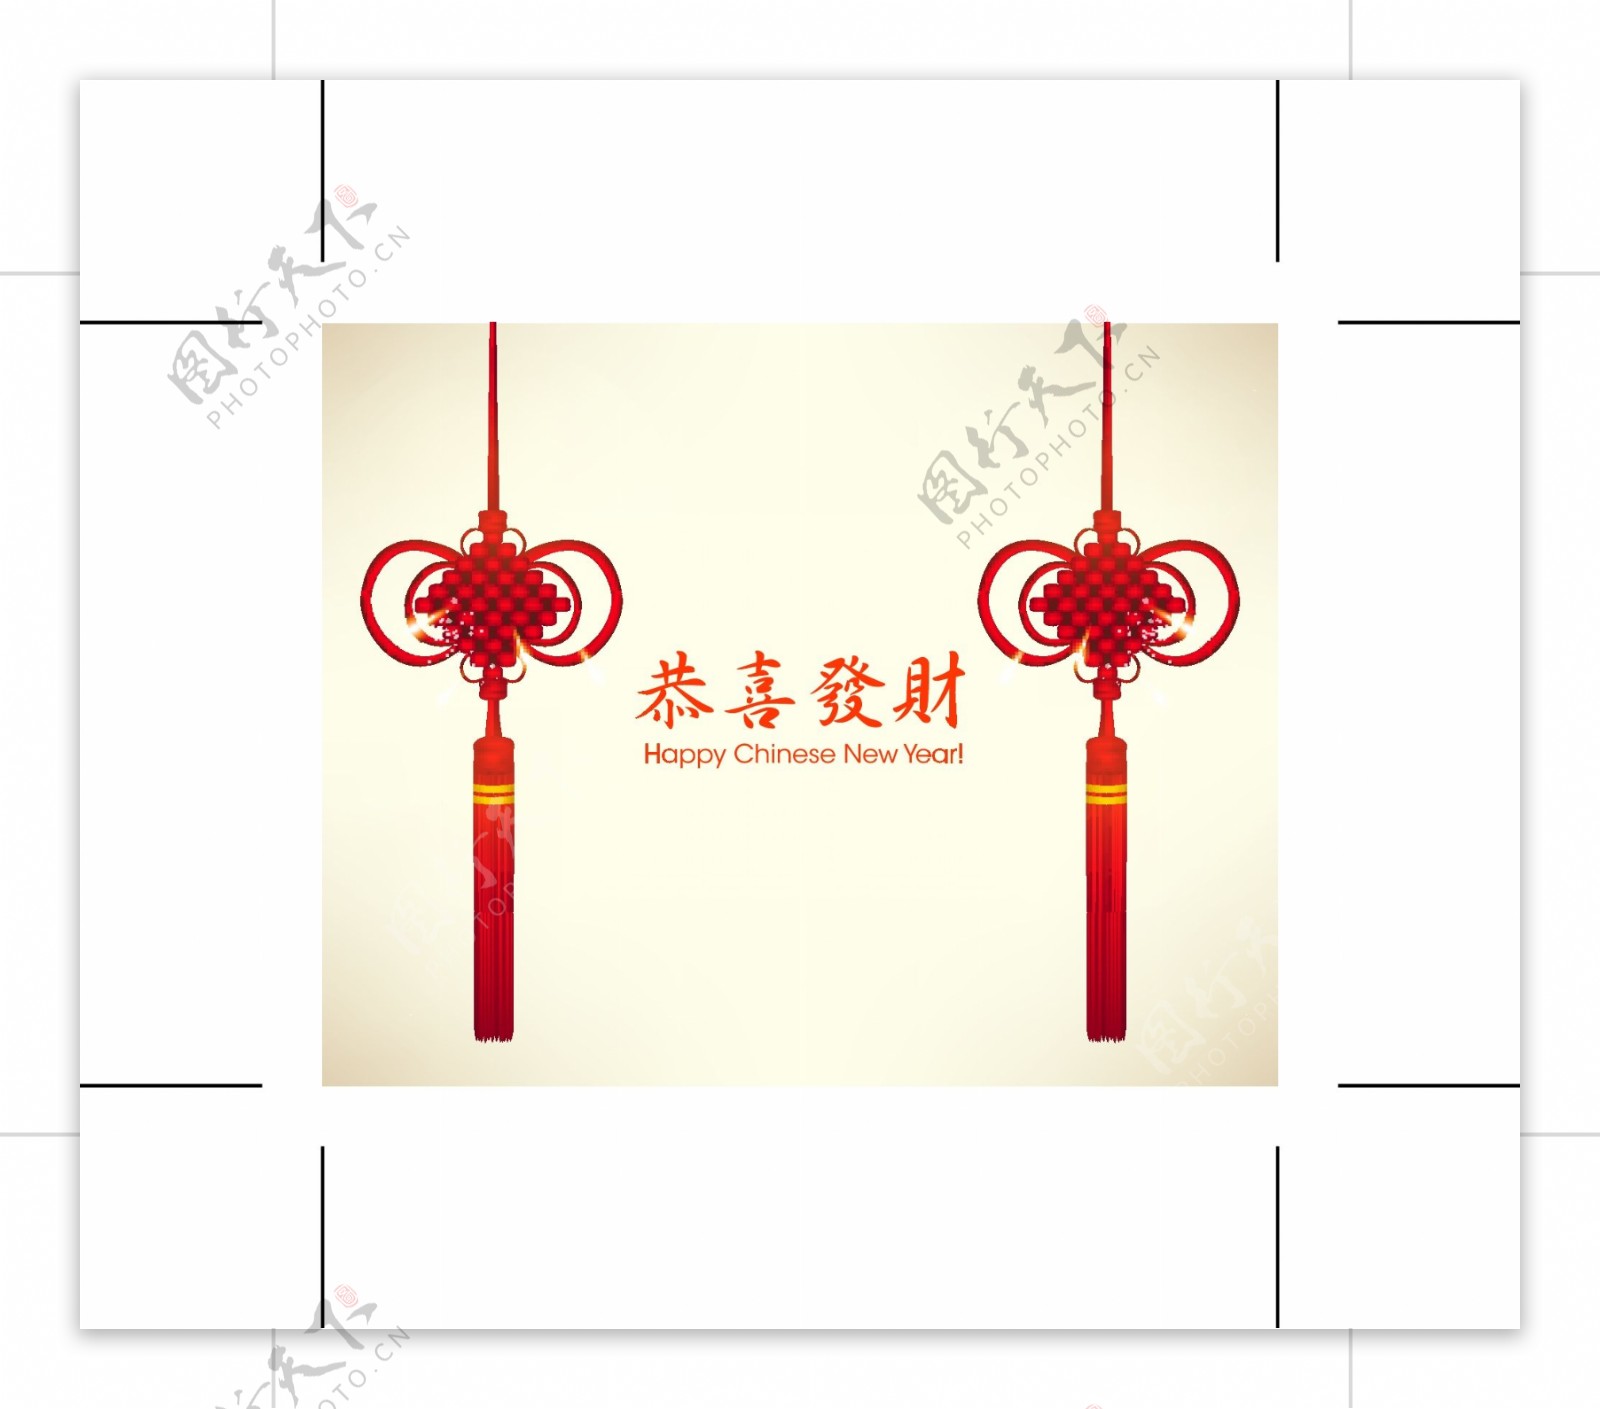 中国的新年贺卡02矢量素材